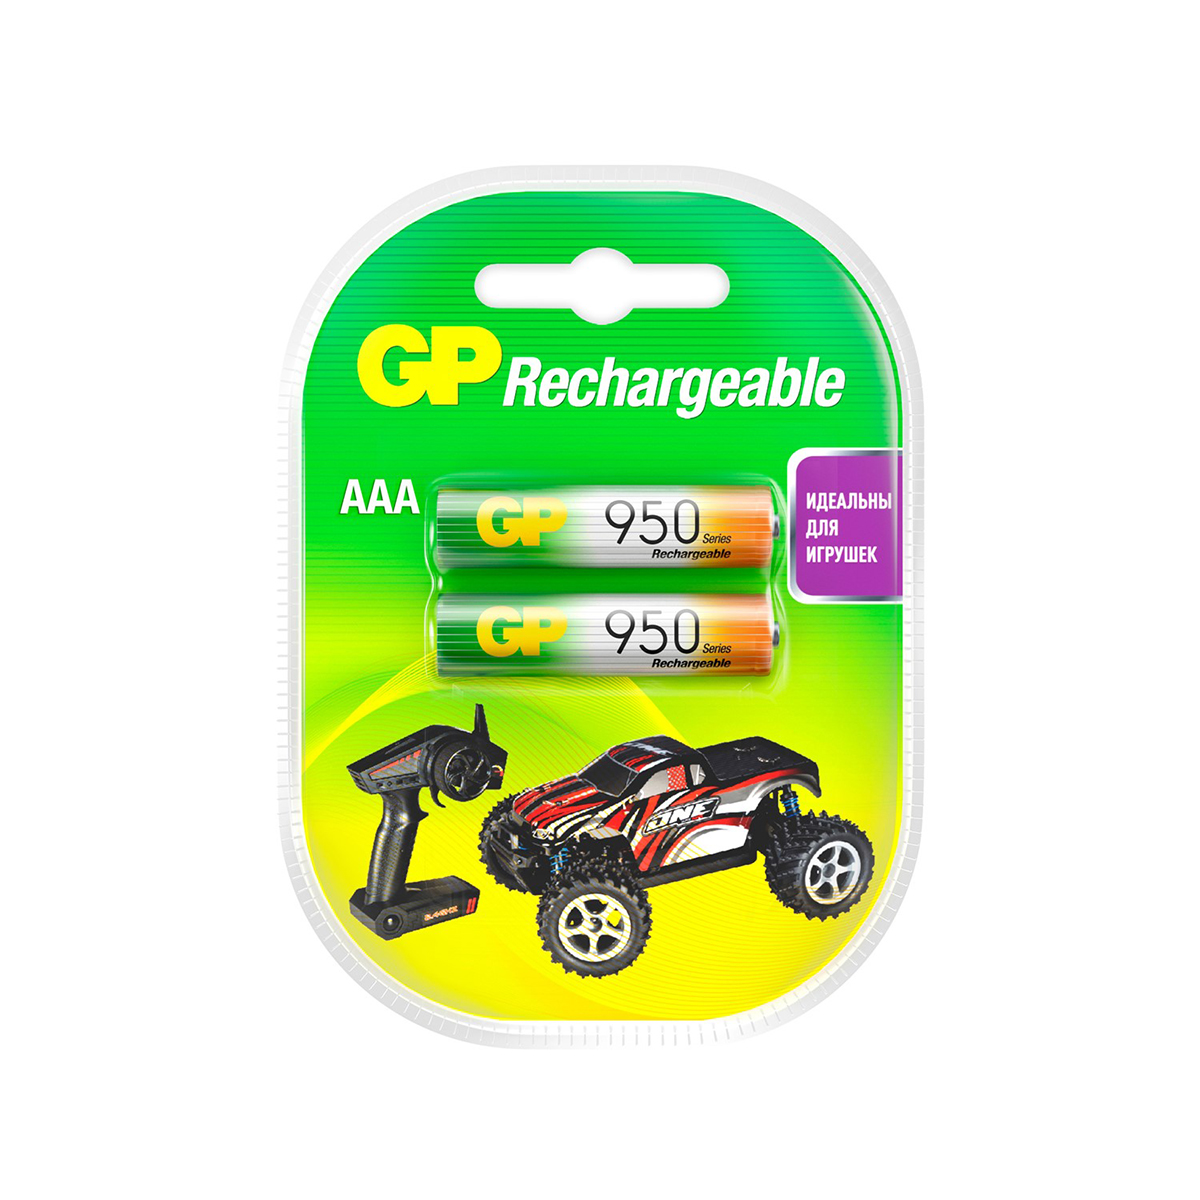 Аккумулятор gp rechargeable 95aaahc-2decrc2  тип ааа, 950 мач (2 шт. в блистере) (1/10/100)